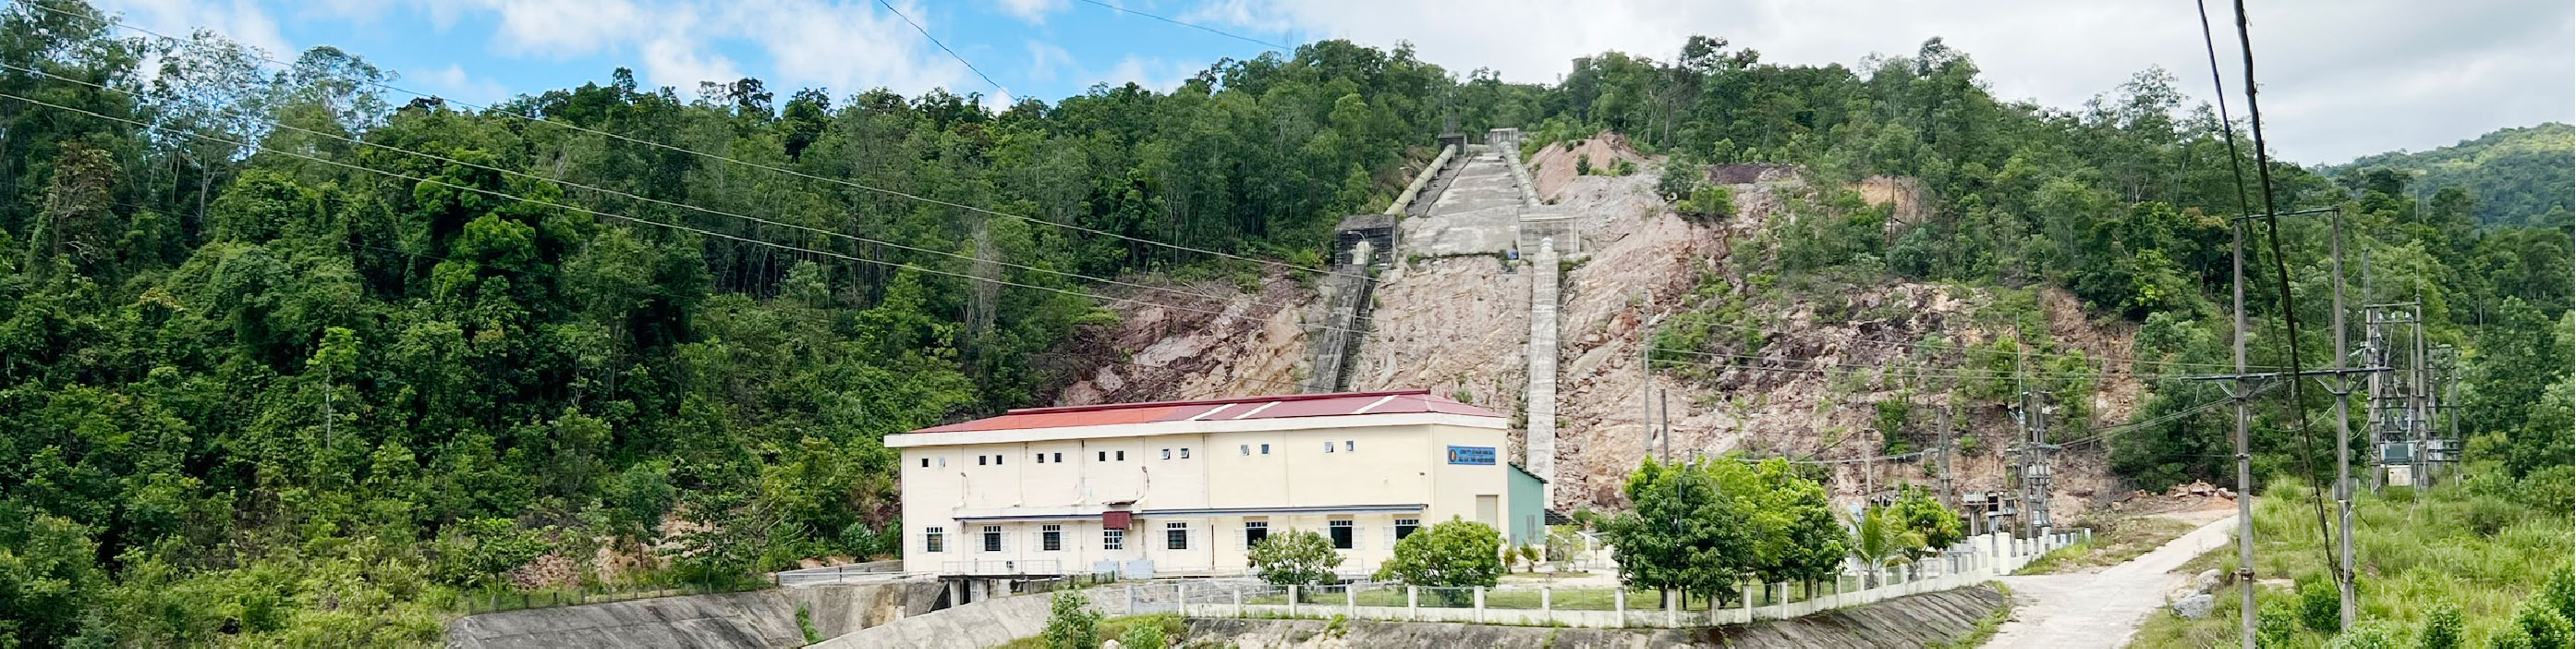 Nhà máy thủy điện Khe Diên